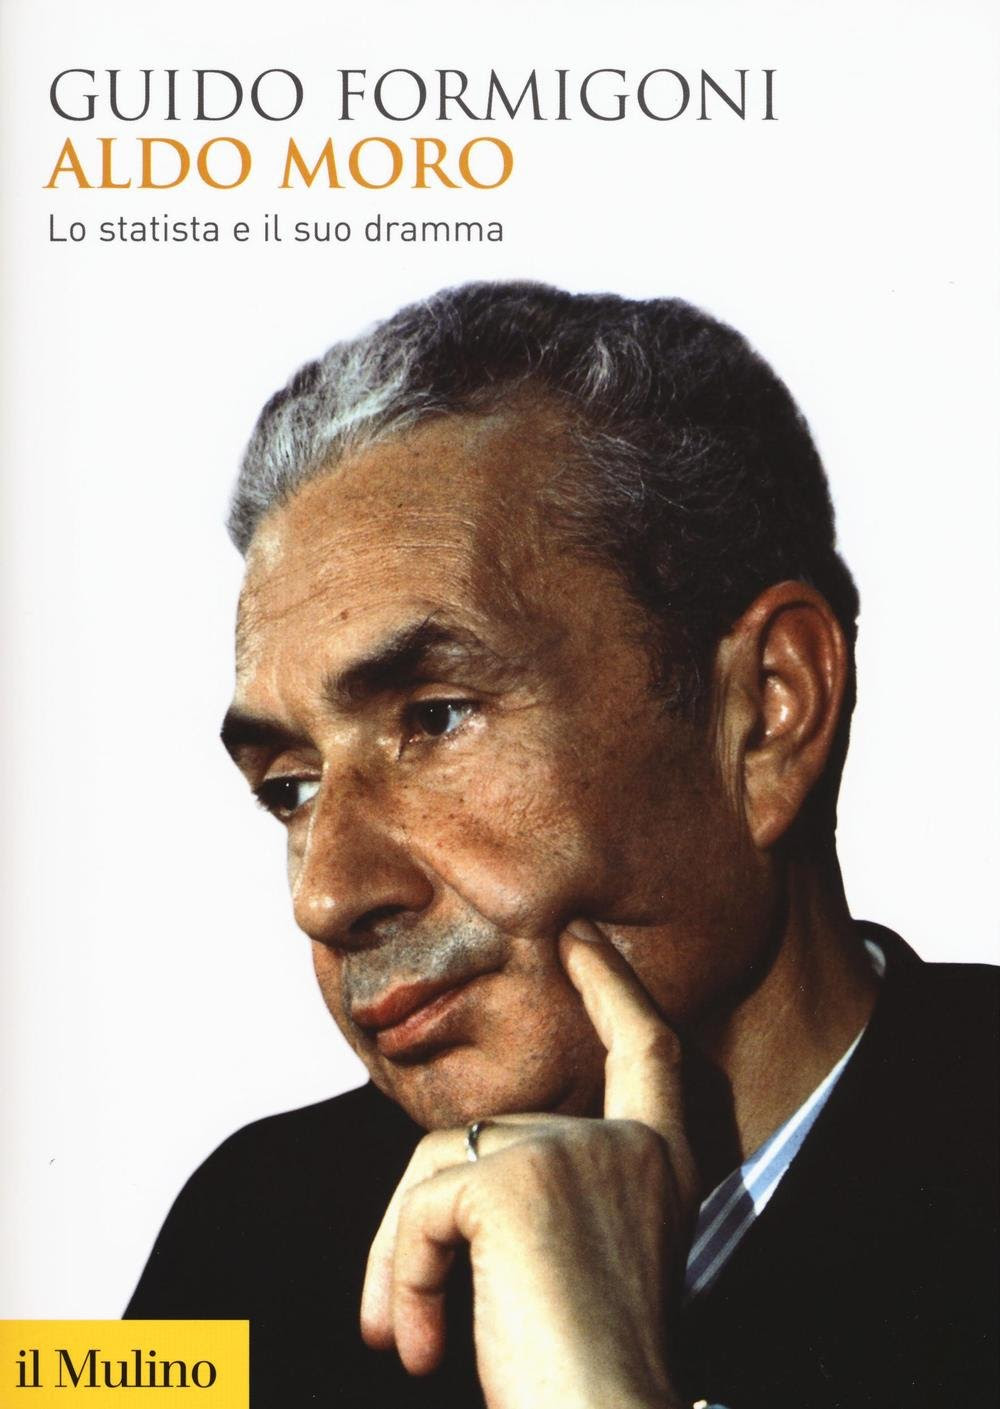 Aldo Moro. Lo statista e il suo dramma in Kindle/PDF/EPUB